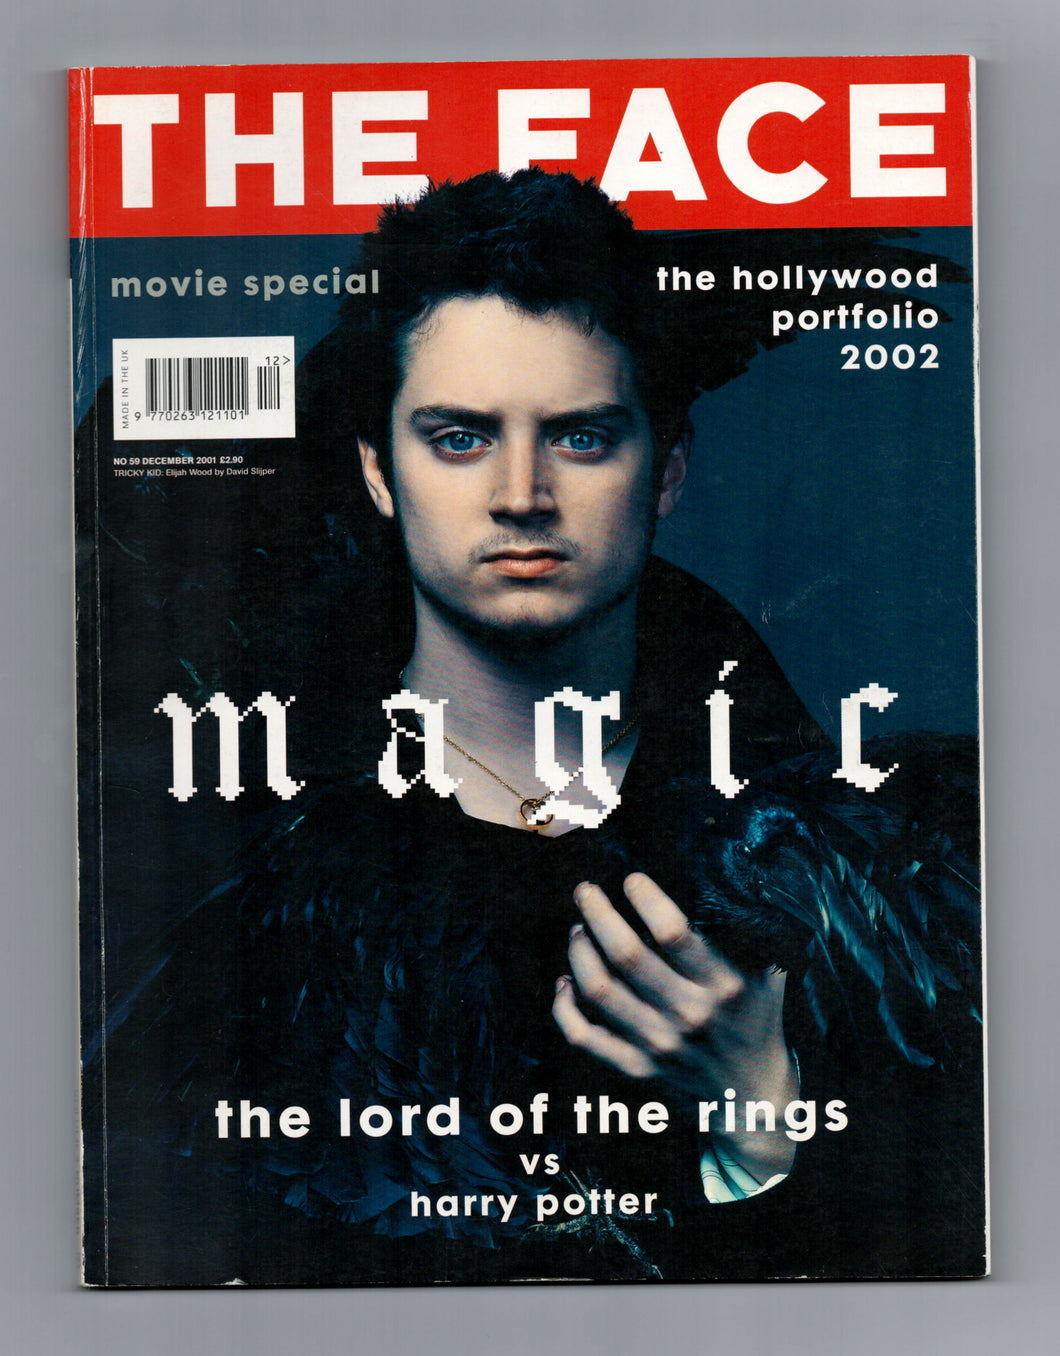 The Face Vol 3 No 59 Dec 2001